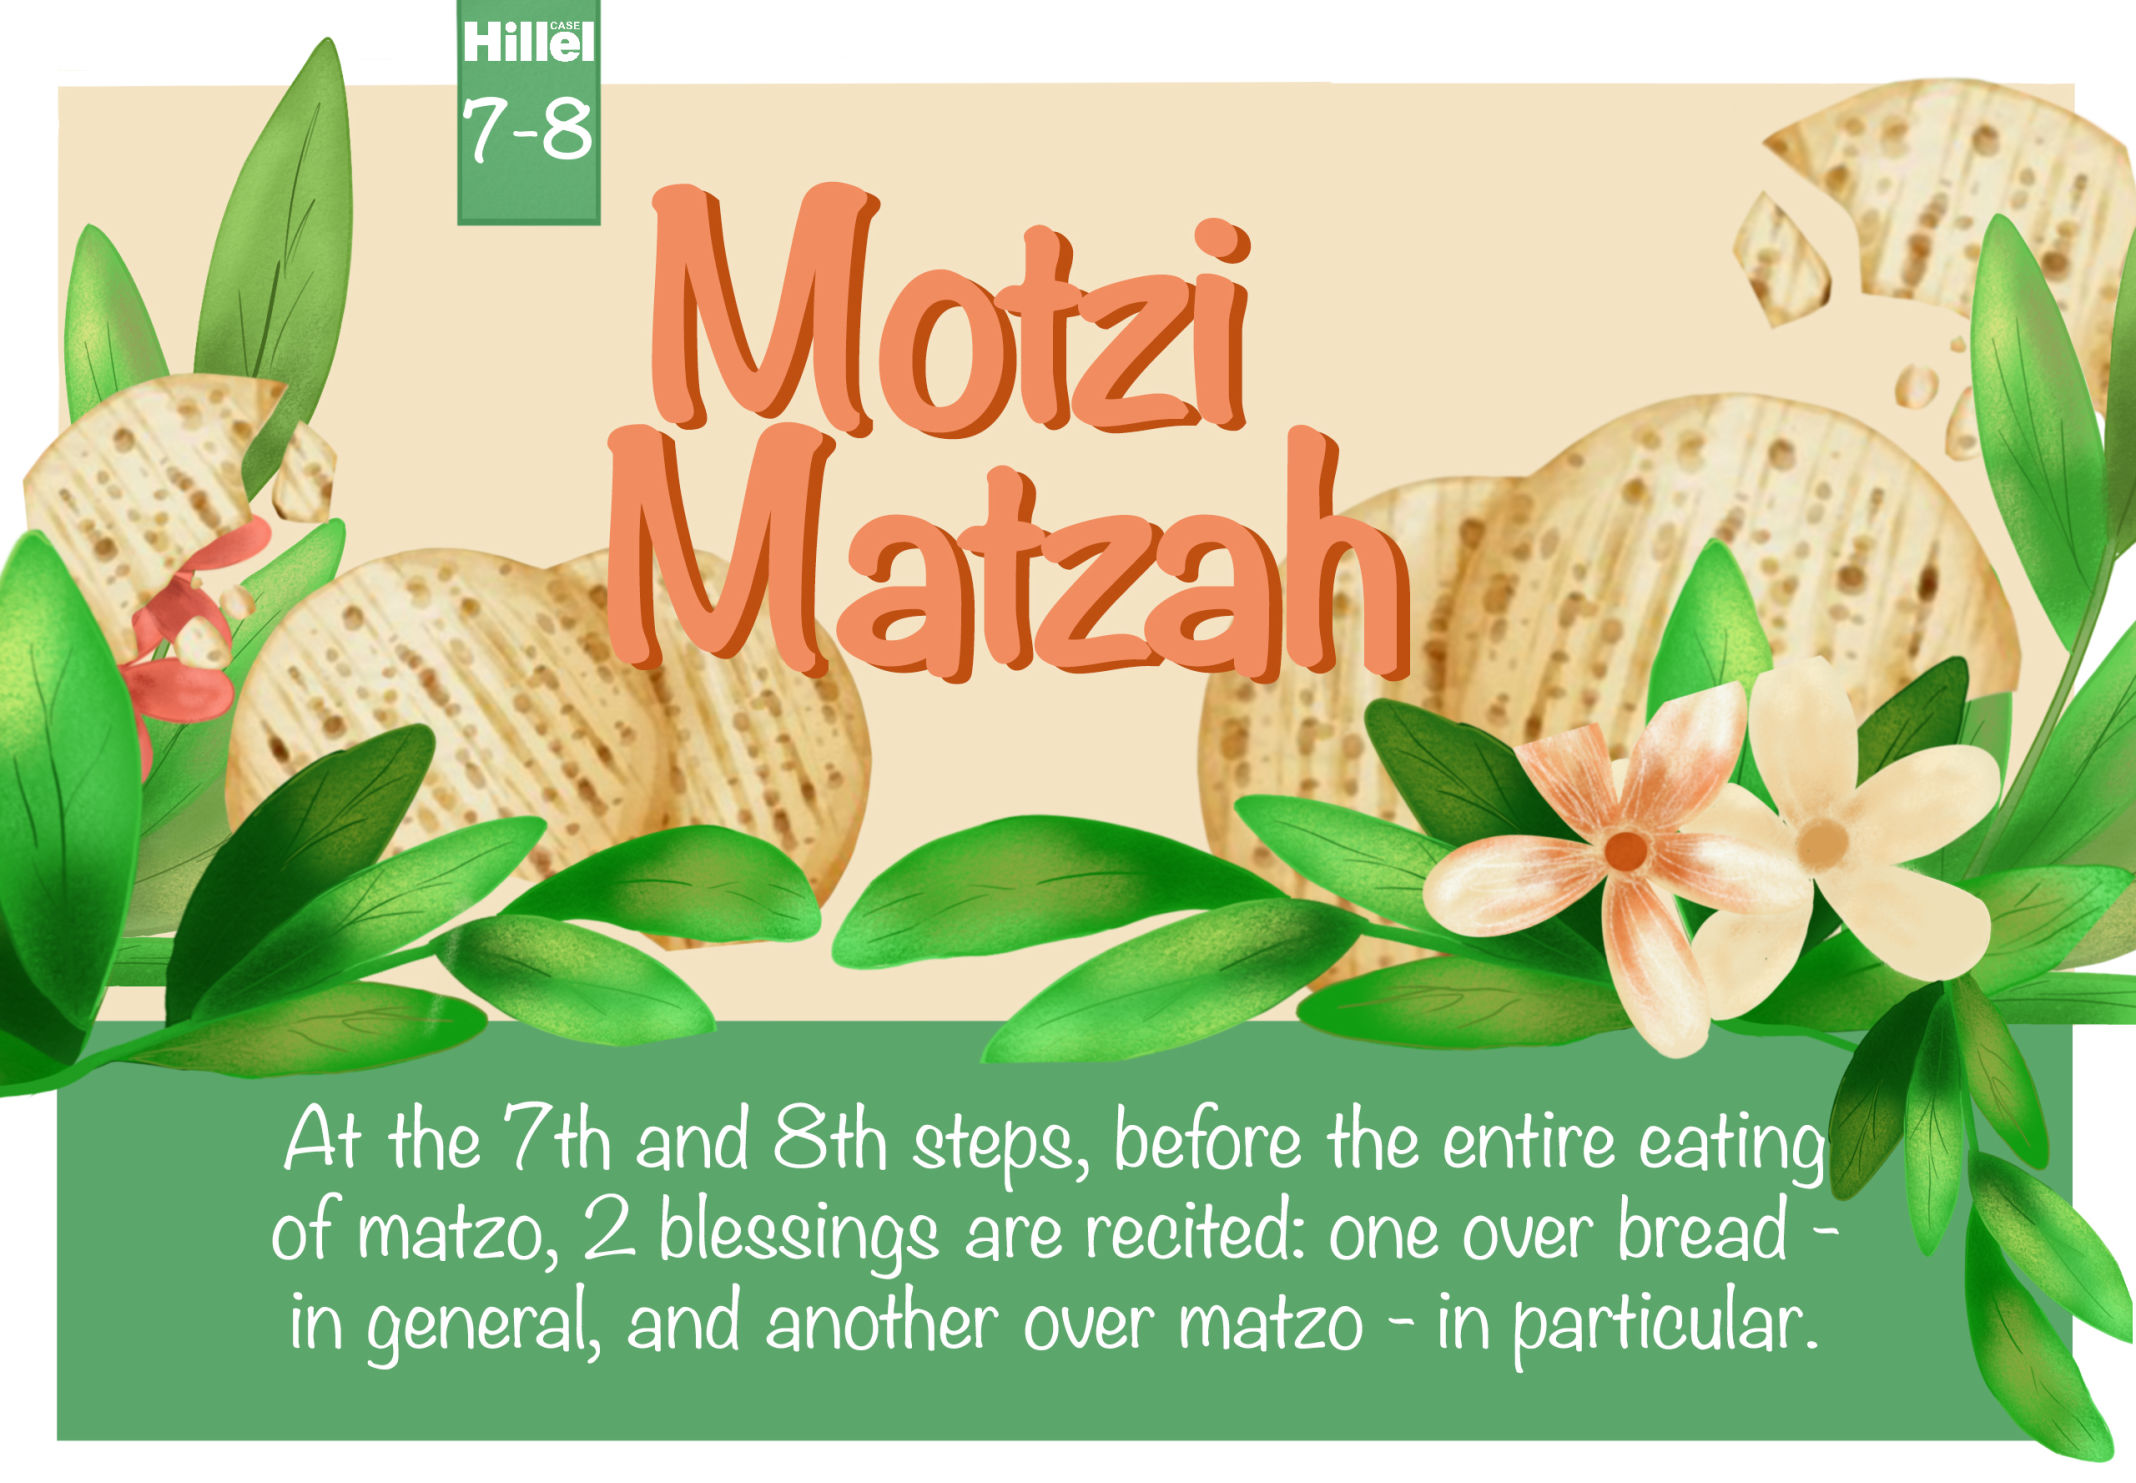 Motzi Matzah